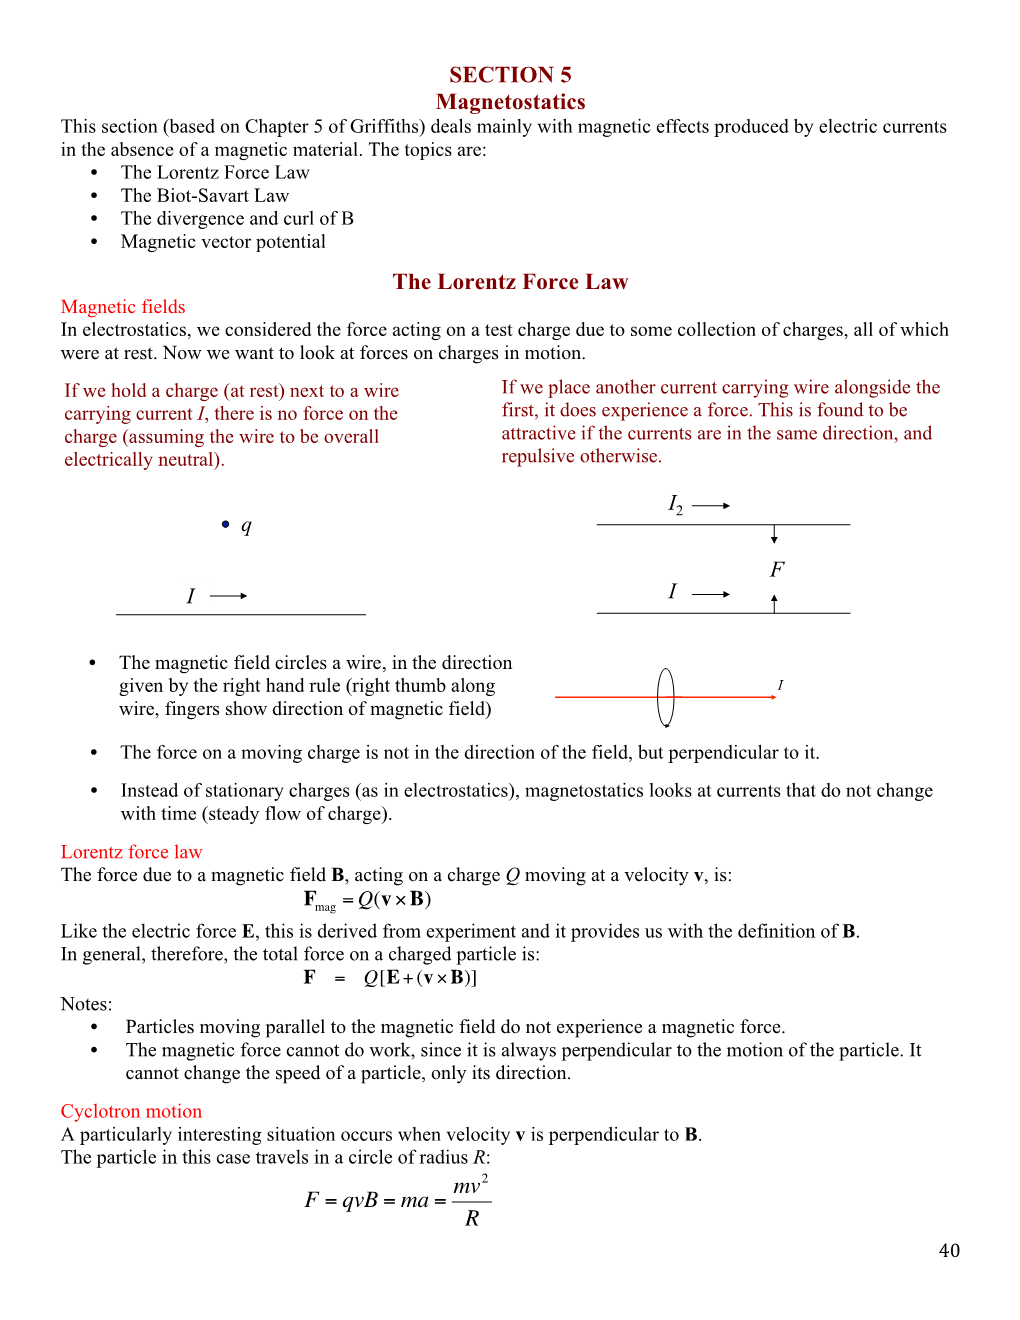 SECTION 5 Magnetostatics the Lorentz Force Law I2 I F F = Qvb